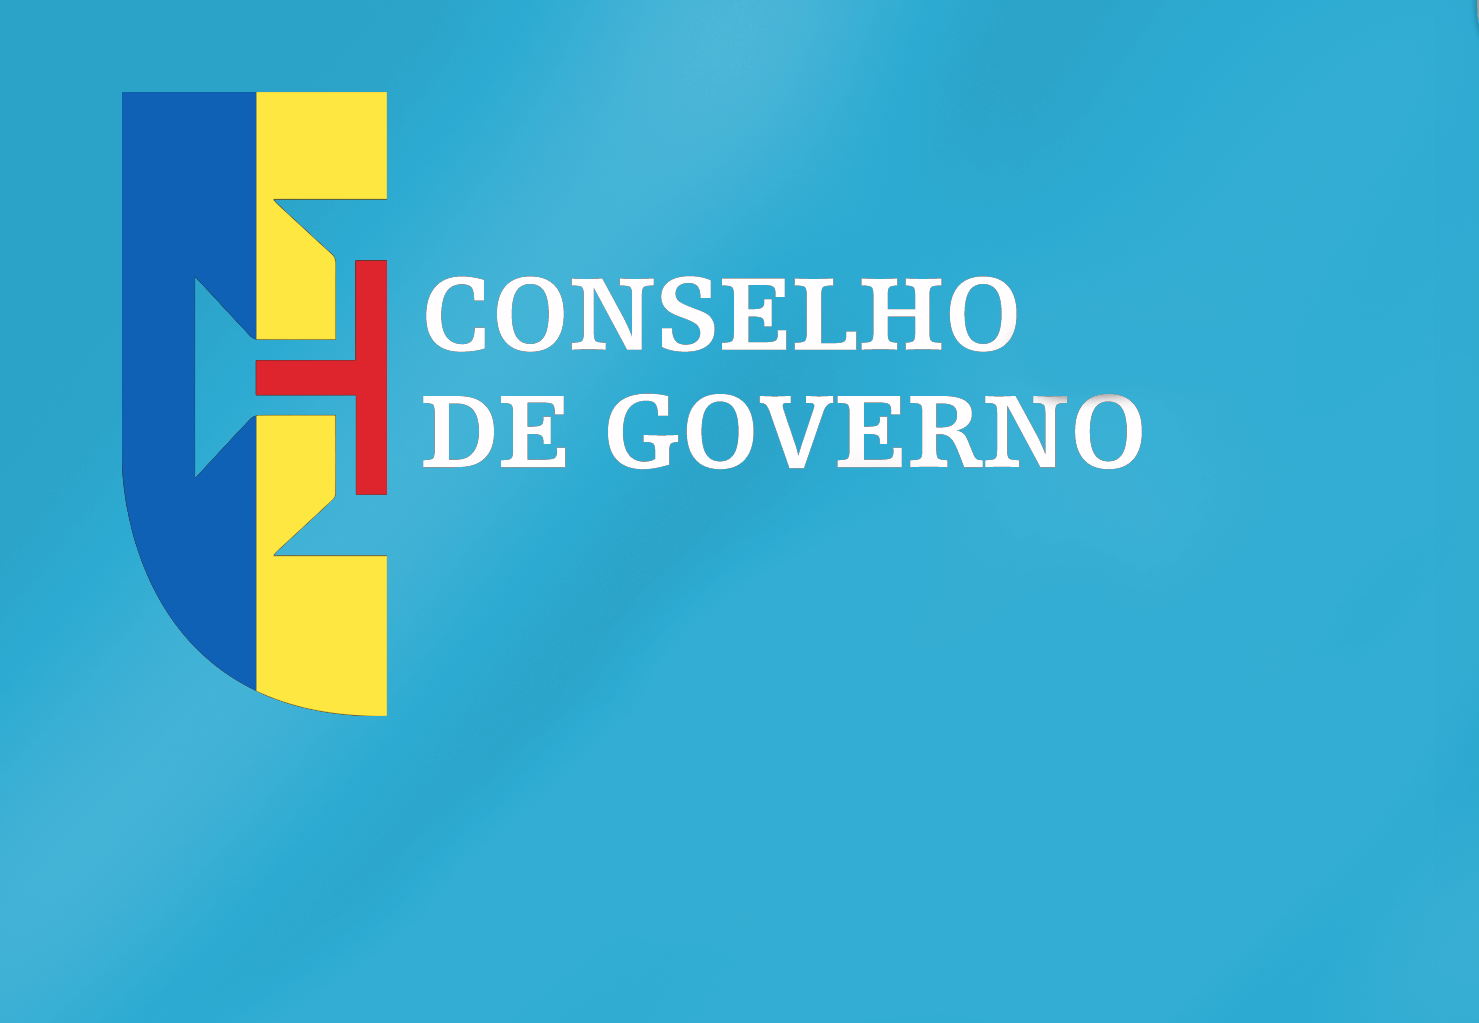 Conclusões Conselho de Governo - 5 de janeiro de 2023